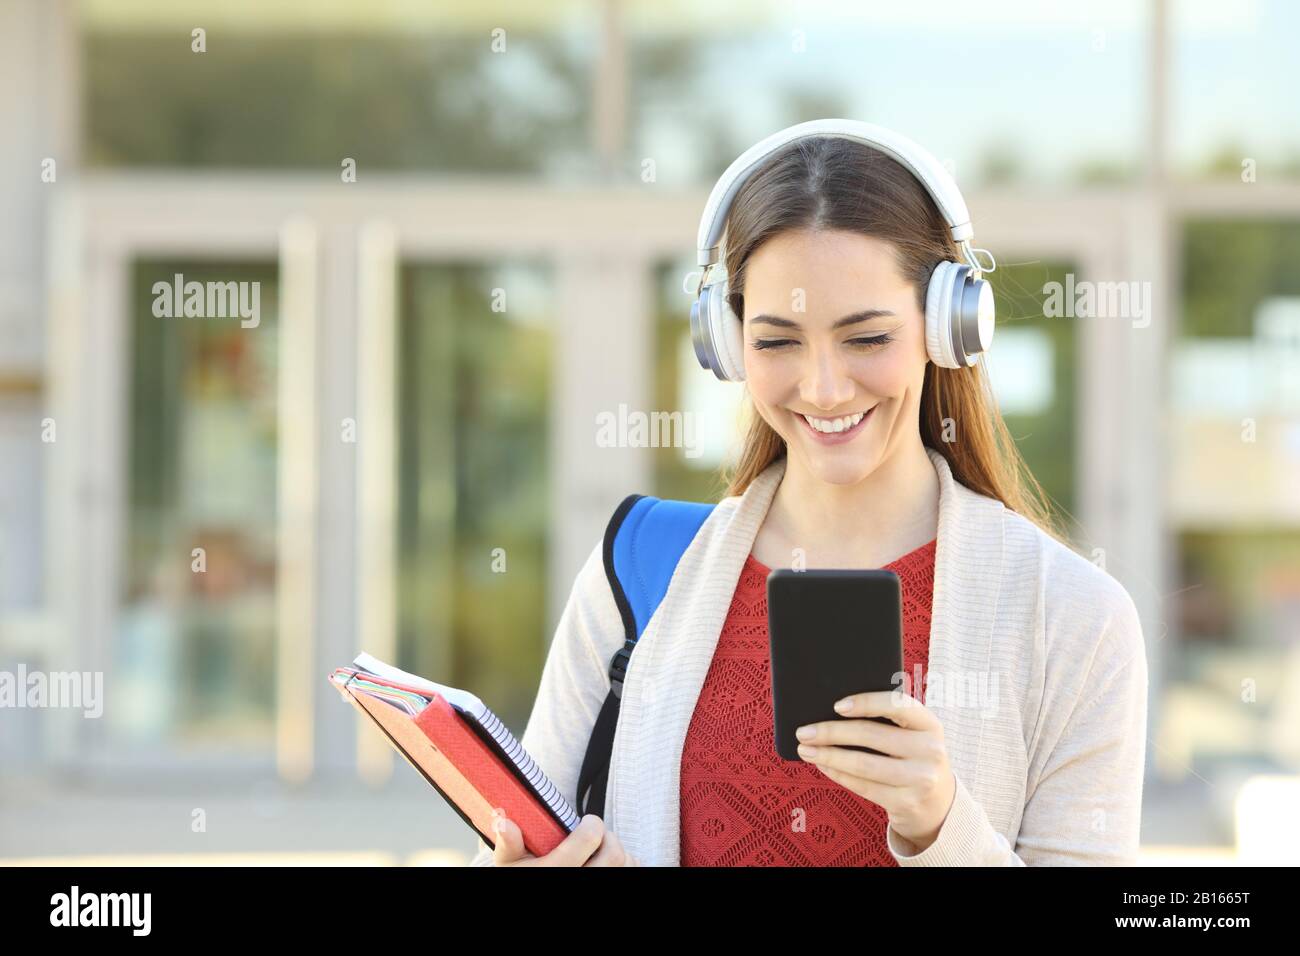 Vorderansicht Porträt eines glücklichen Studenten, der drahtlose Kopfhörer trägt, Musik mit dem Handy auf einem Campus anhört Stockfoto